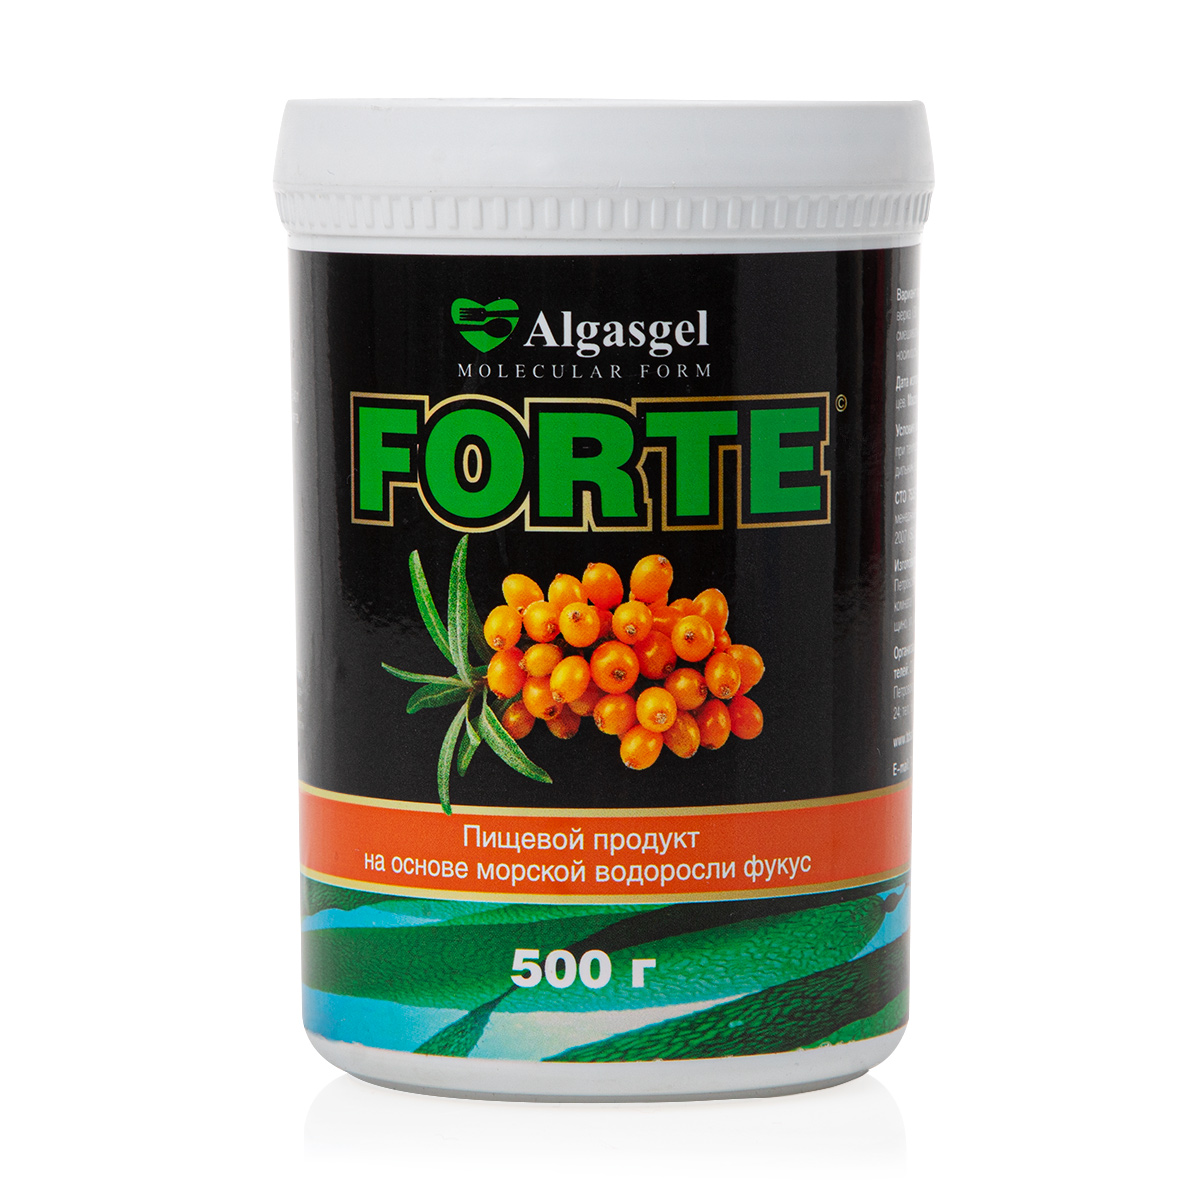 Пищевой продукт Algasgel Forte для снижения вечернего аппетита (500 г) пищевой продукт algasgel vita 2 уп по 500 г 1 в подарок